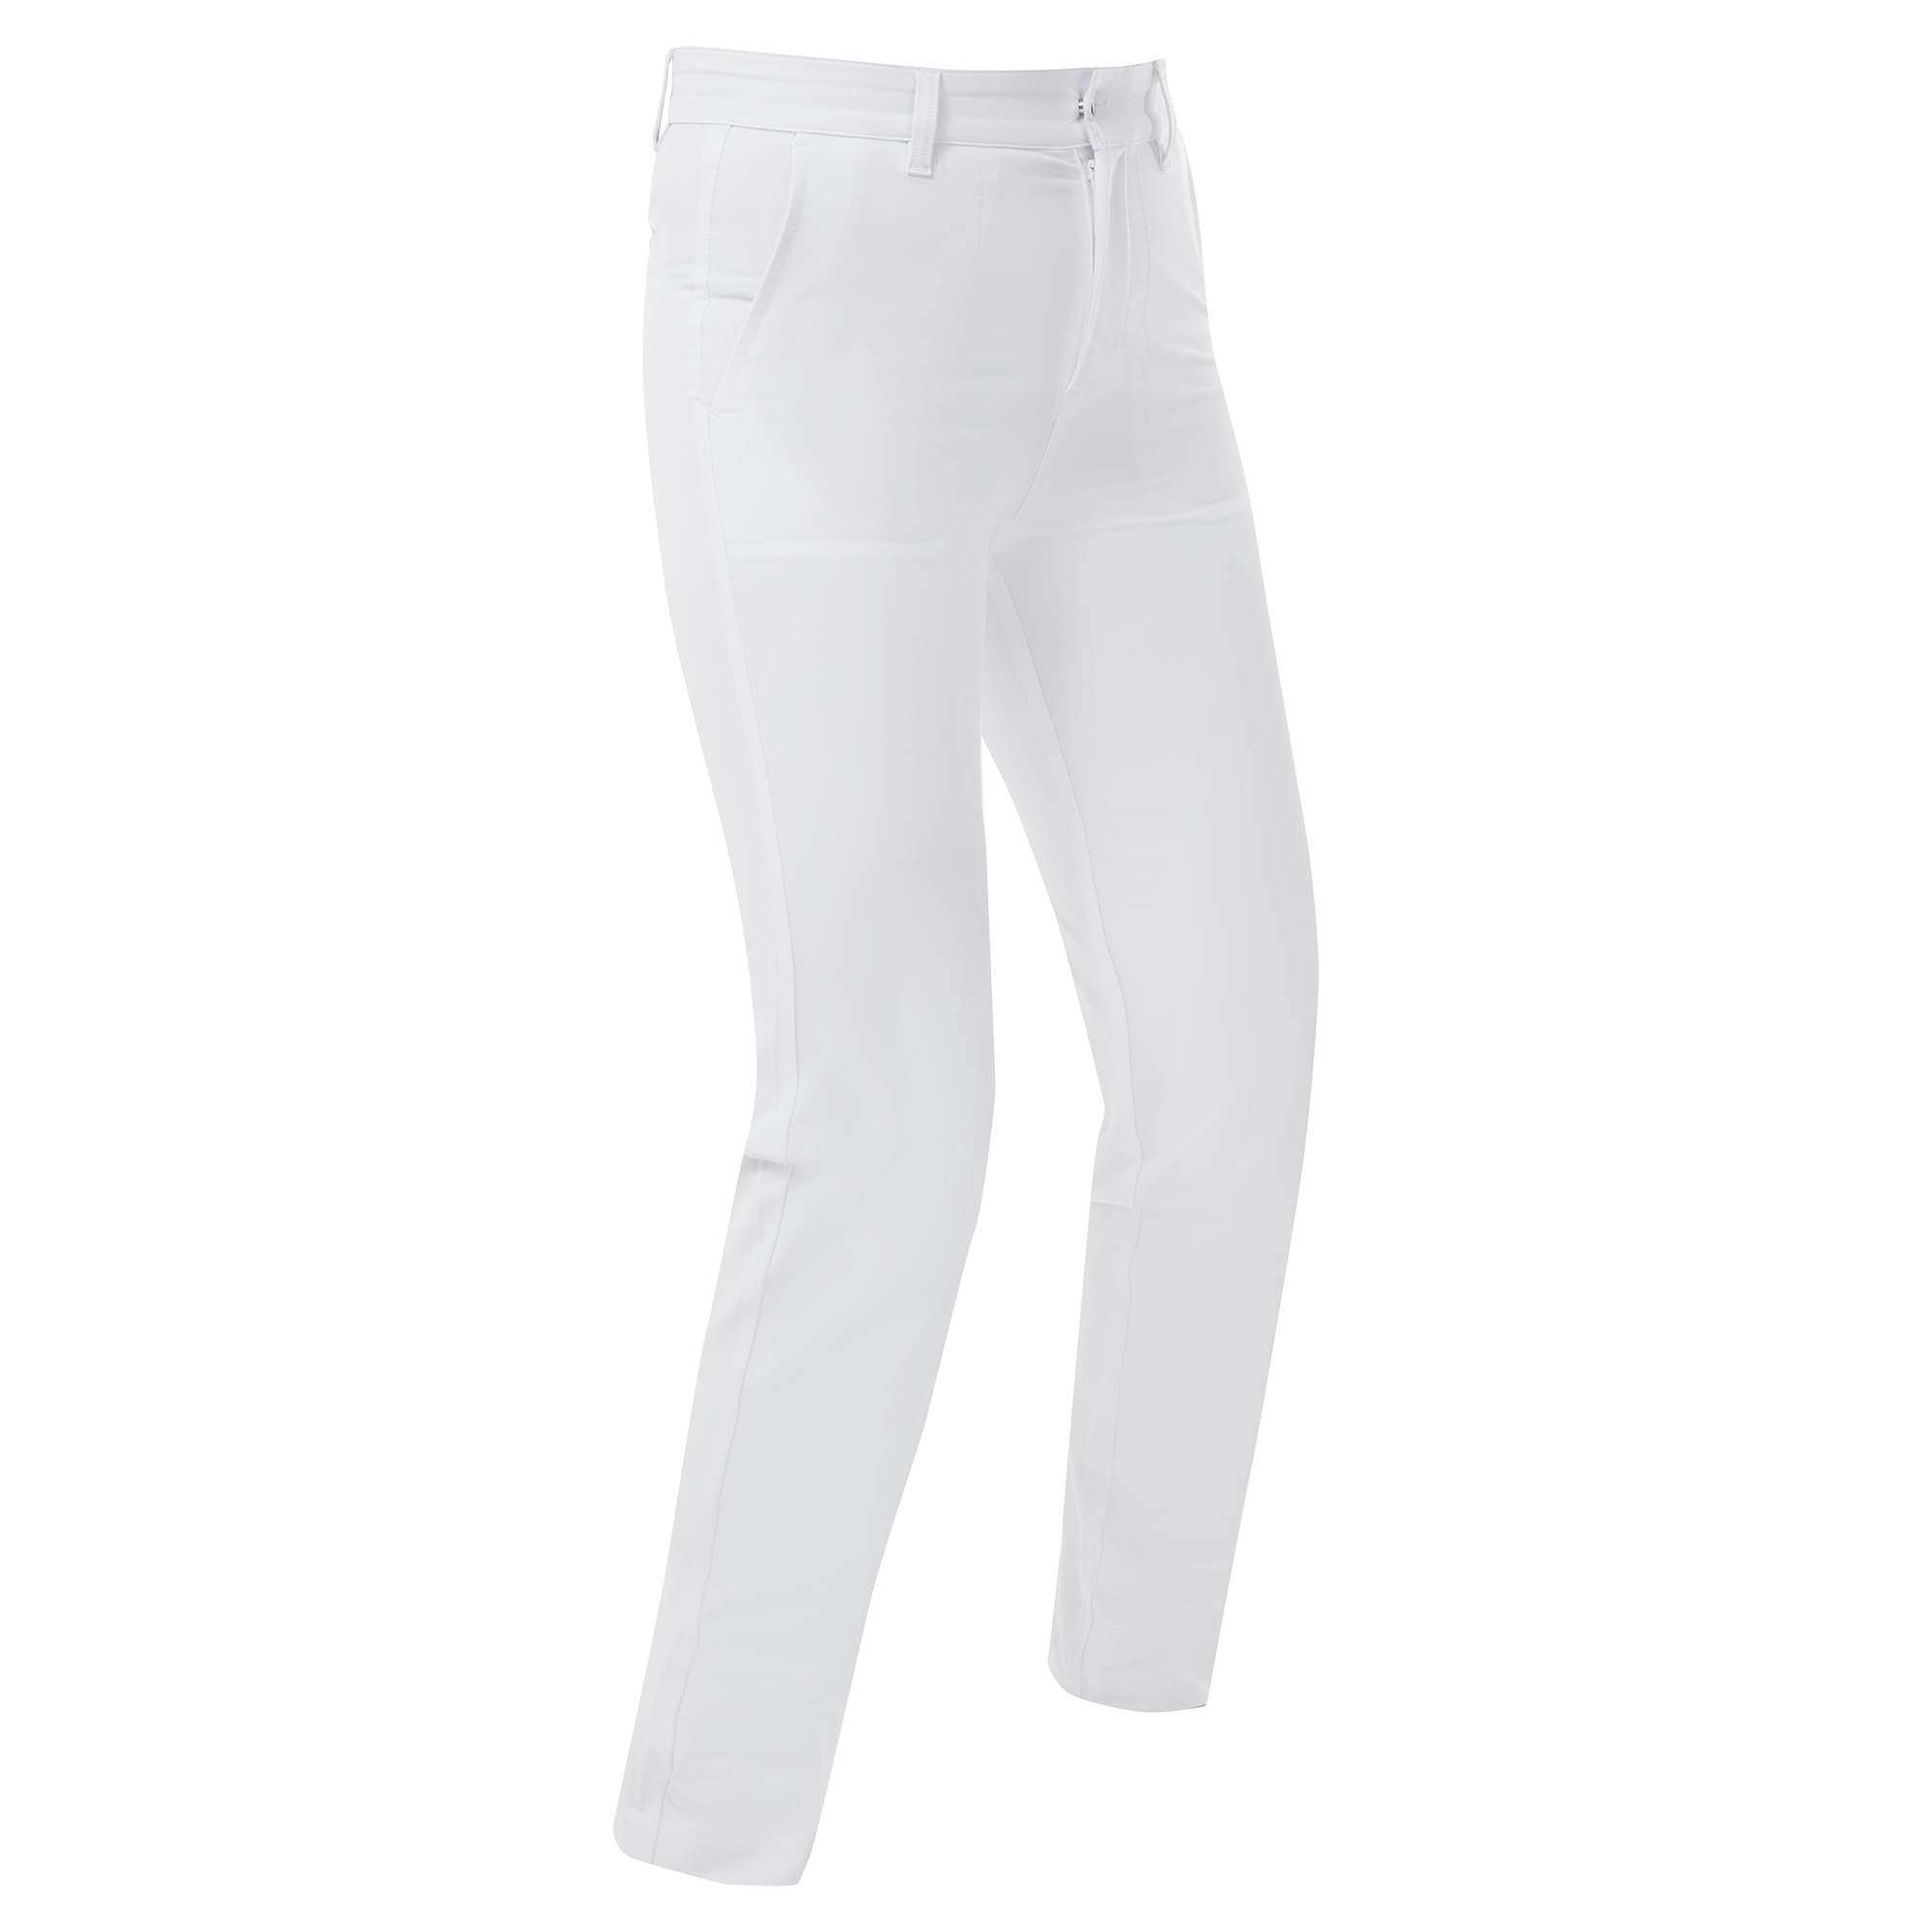 Levně FootJoy Stretch dámské golfové kalhoty, bílé